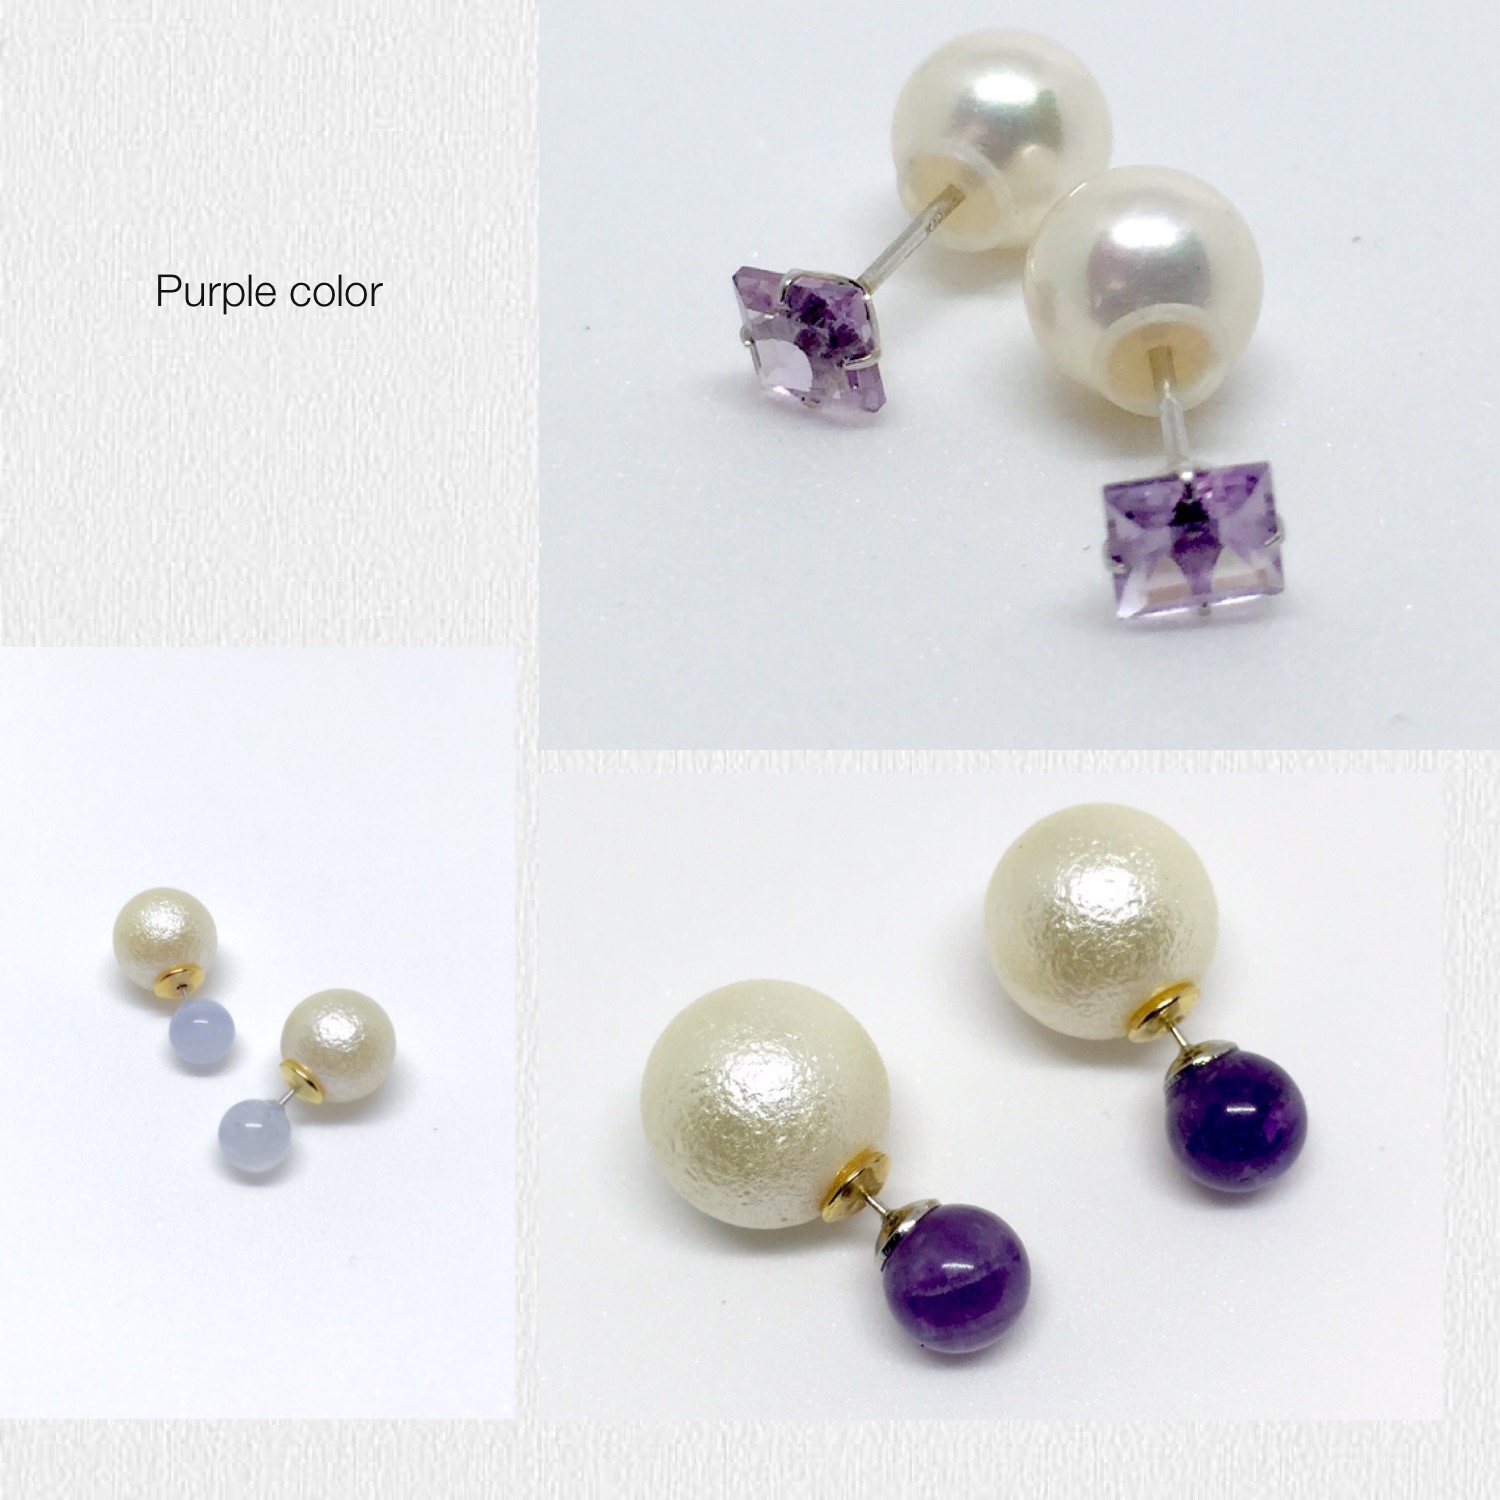 紫✨　Purple color power stone　天然石のもつ色の意味